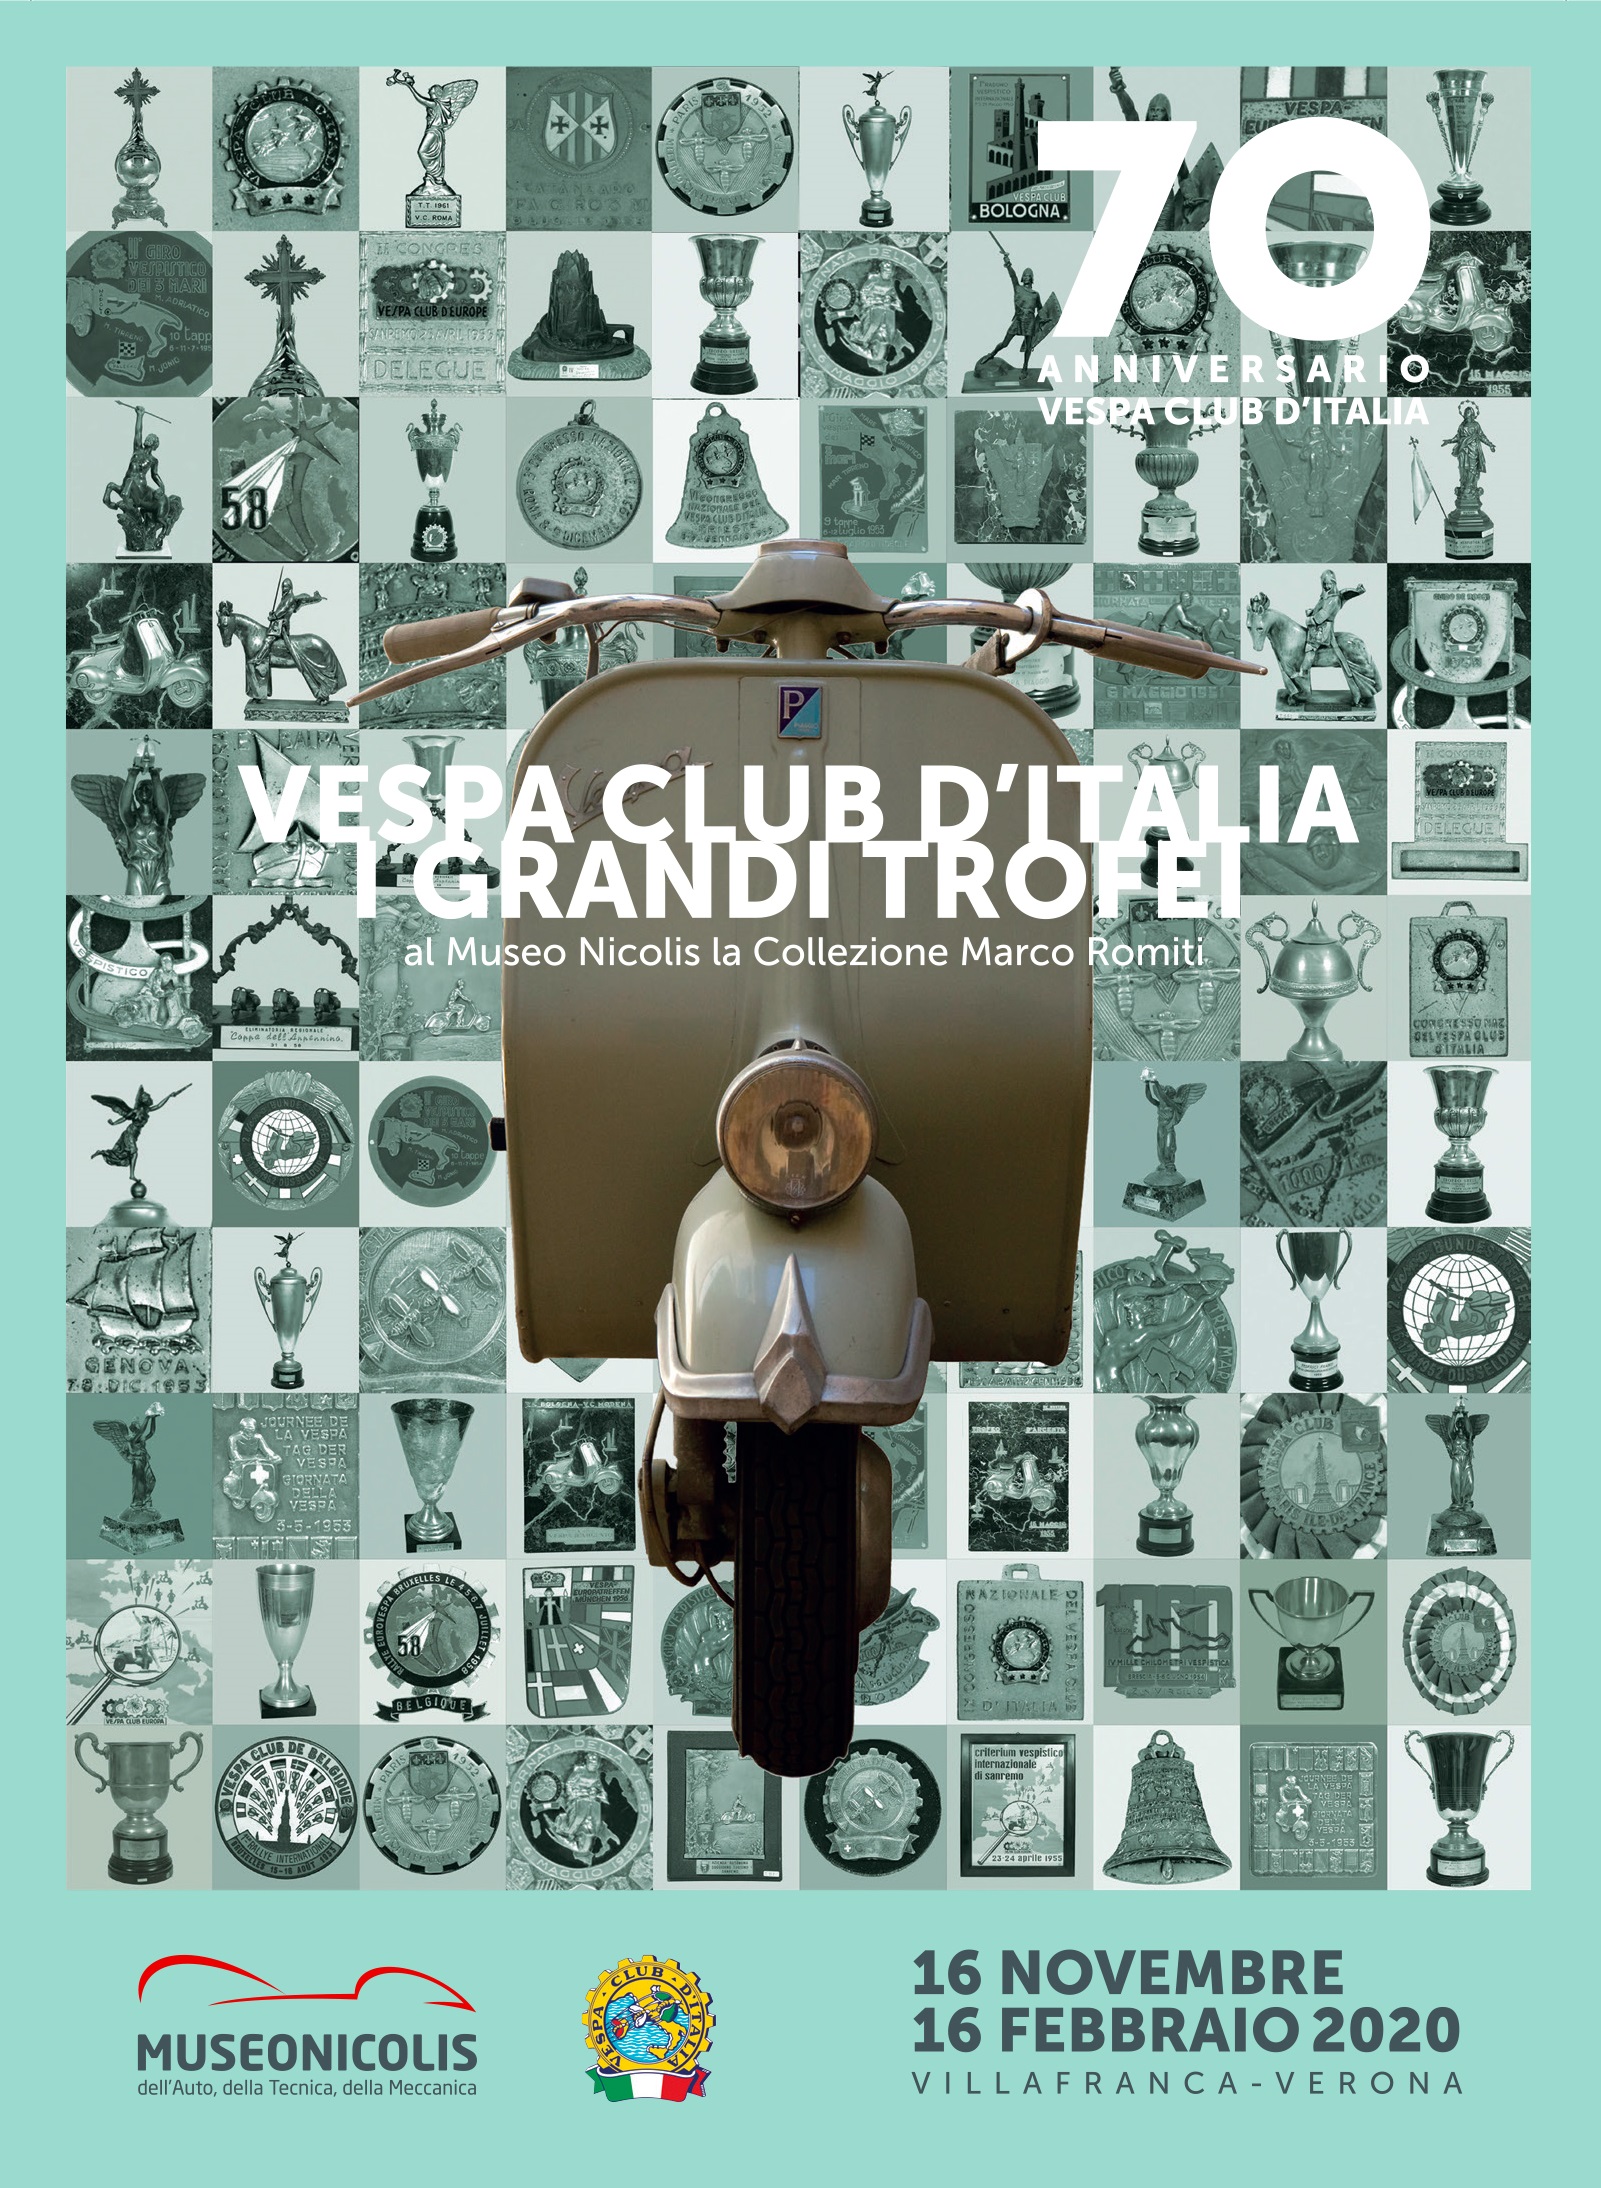 Ausstellung, Vespa Club d’Italia, Die größten Trophäen